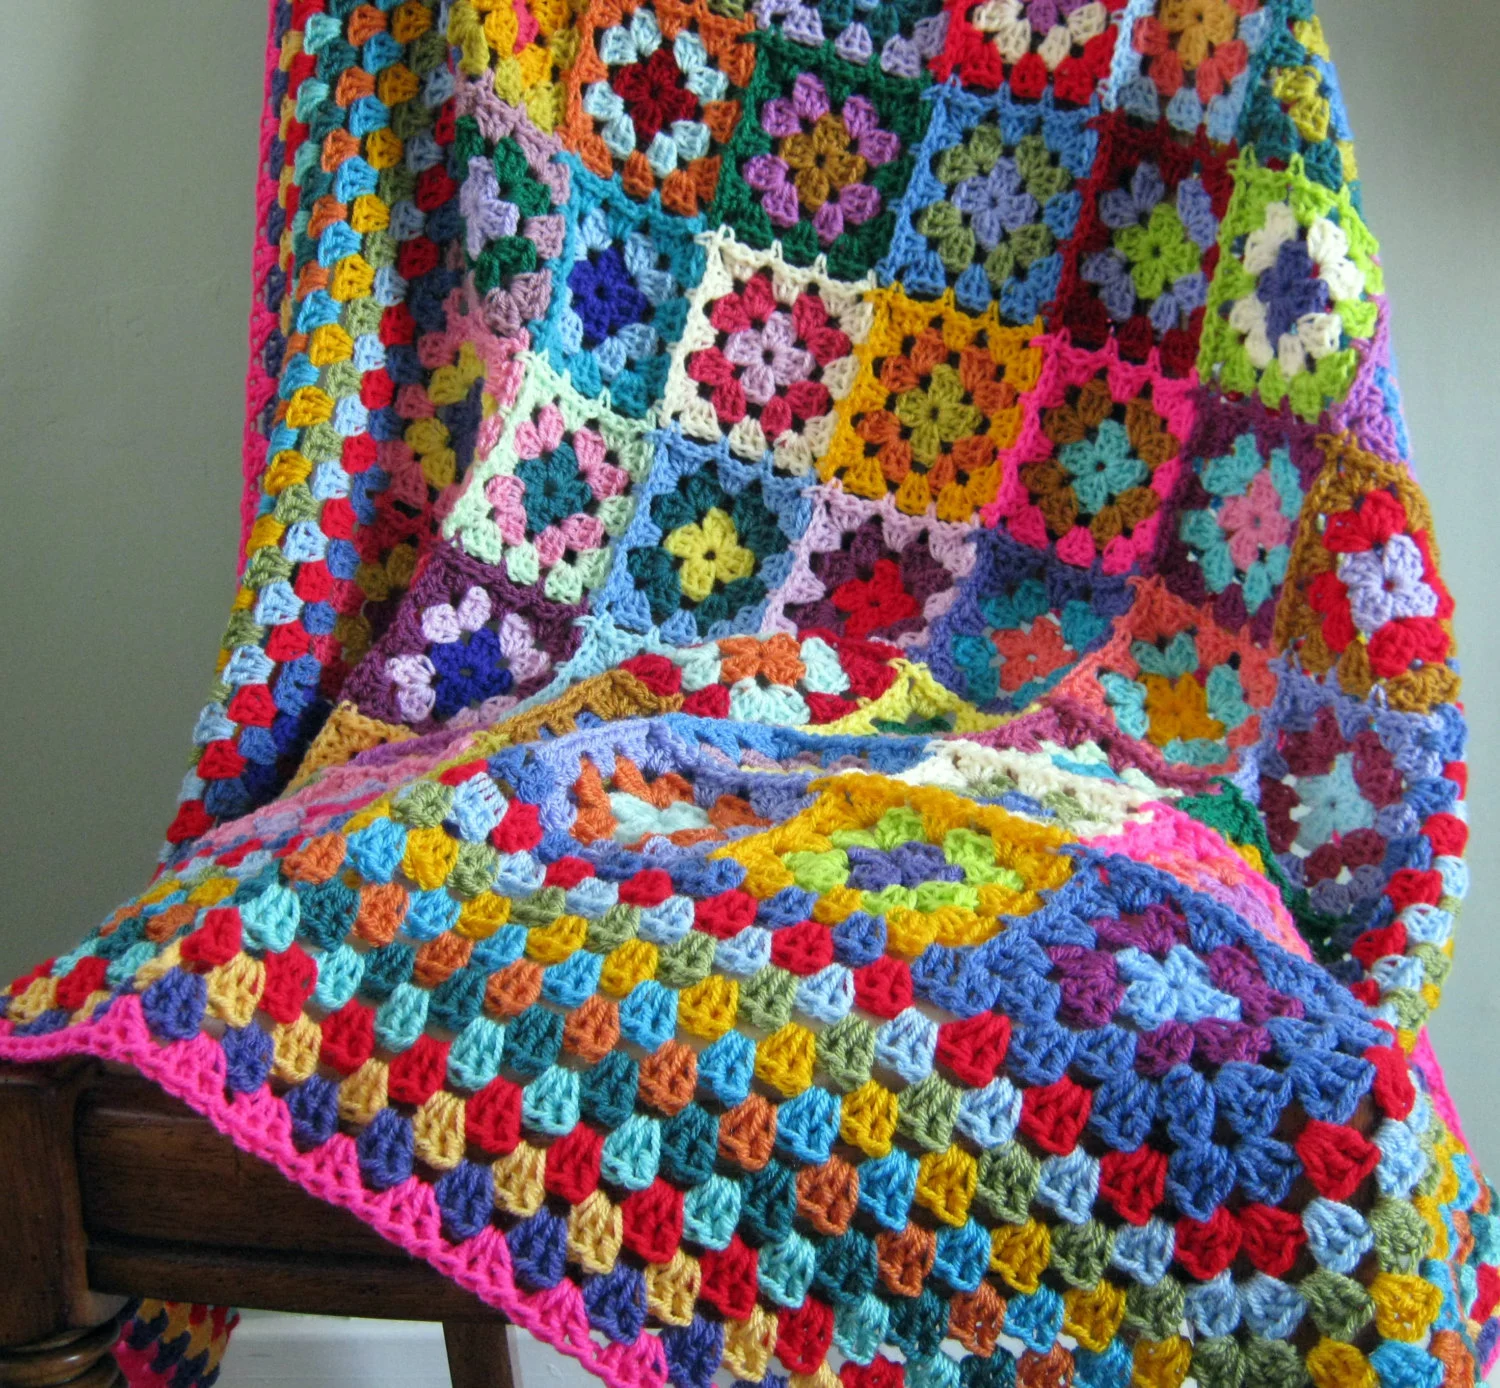 Granny Square Crochet Blanket from The Sunroom UK on Etsy